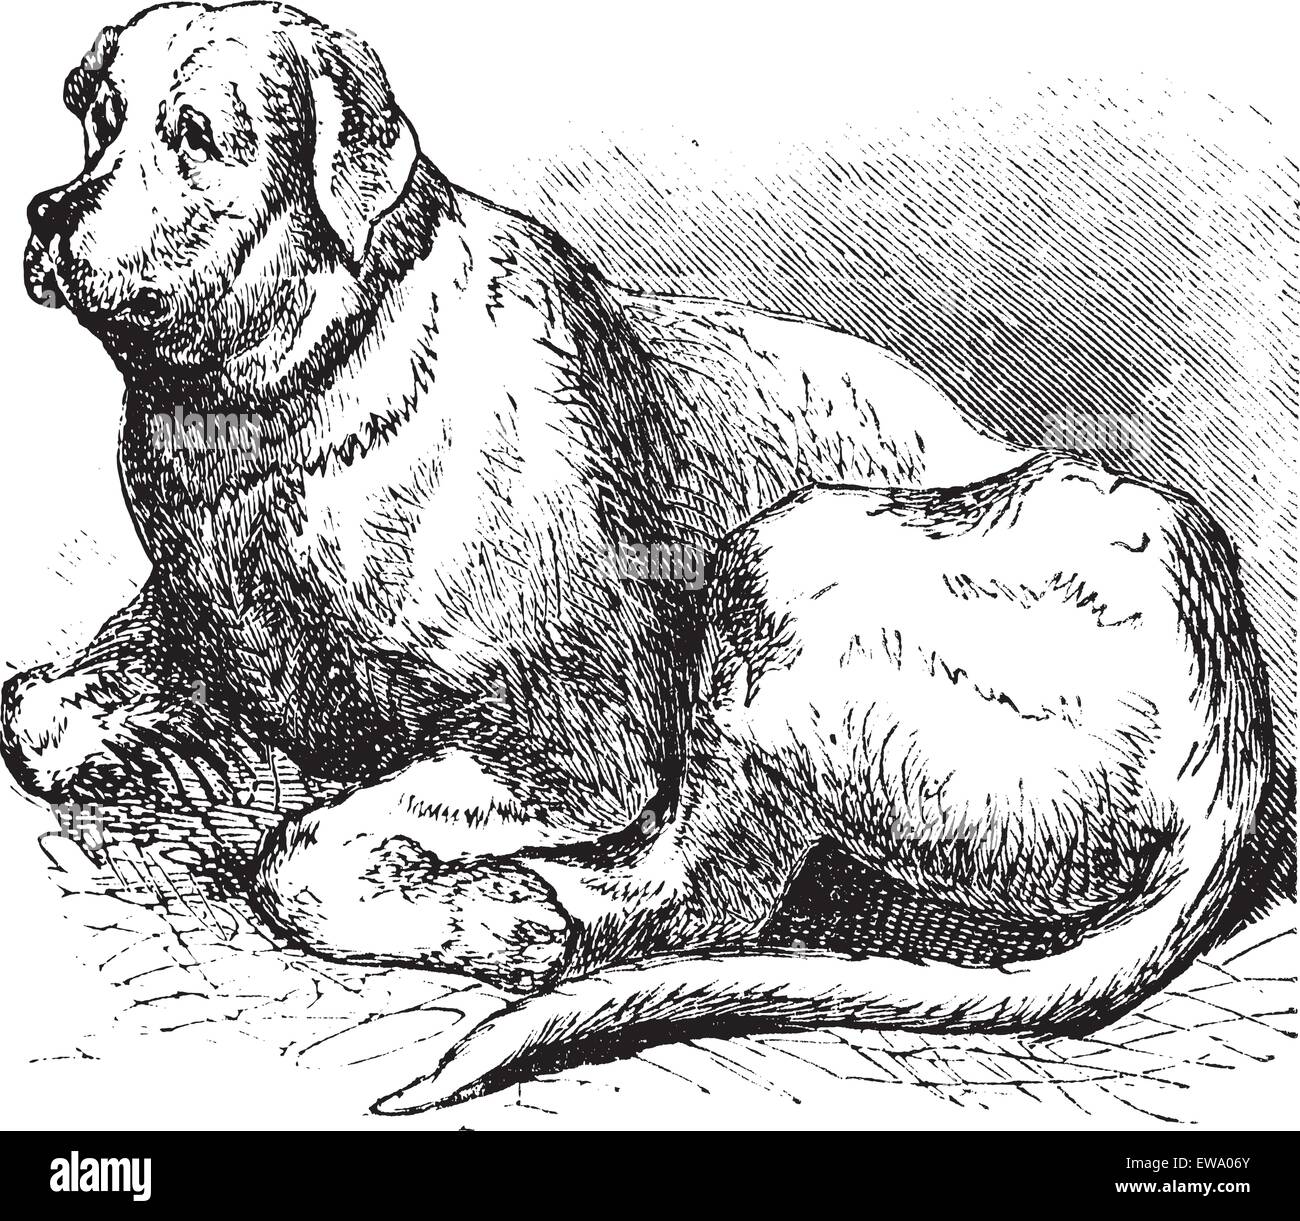 Saint Bernard ou Canis lupus familiaris, gravure d'époque. Vieille illustration gravée d'un Saint Bernard. Illustration de Vecteur